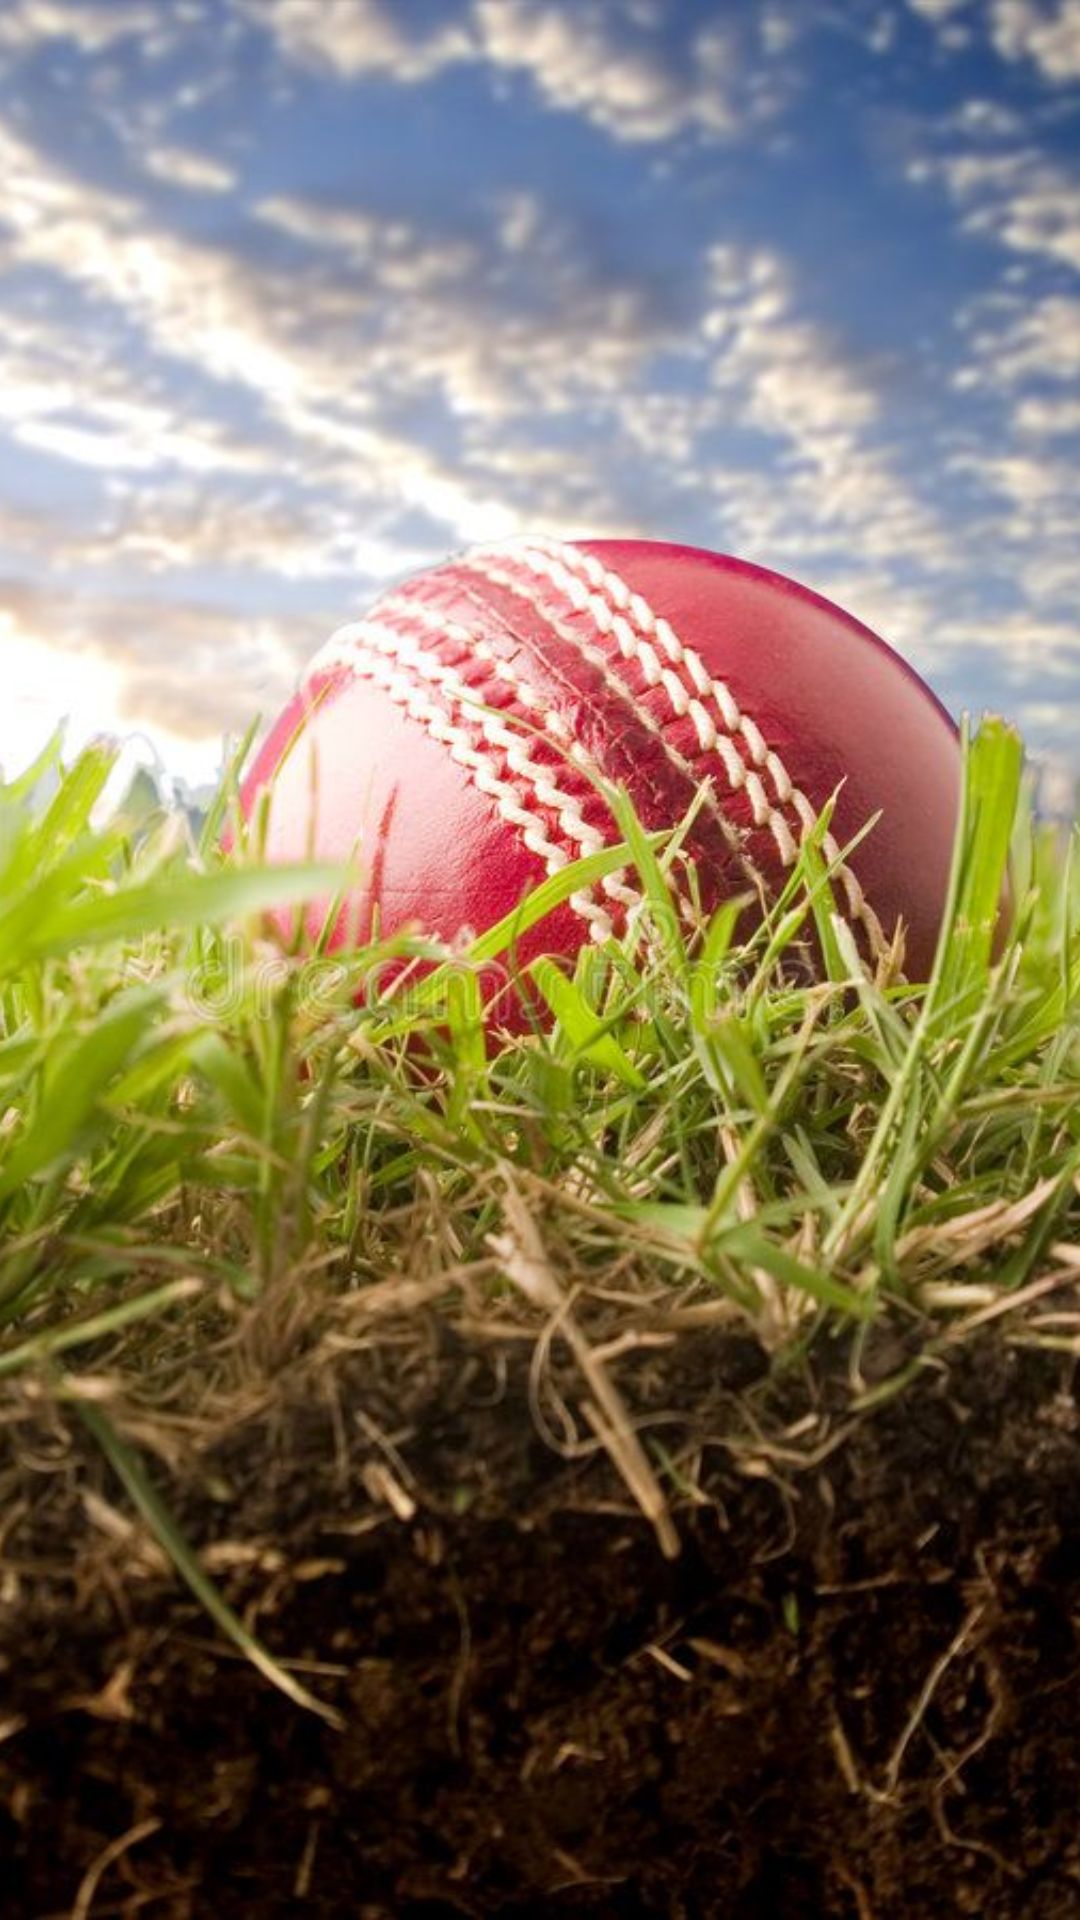 Cricket Wallpapers - Top 25 Best Cricket Backgrounds Download